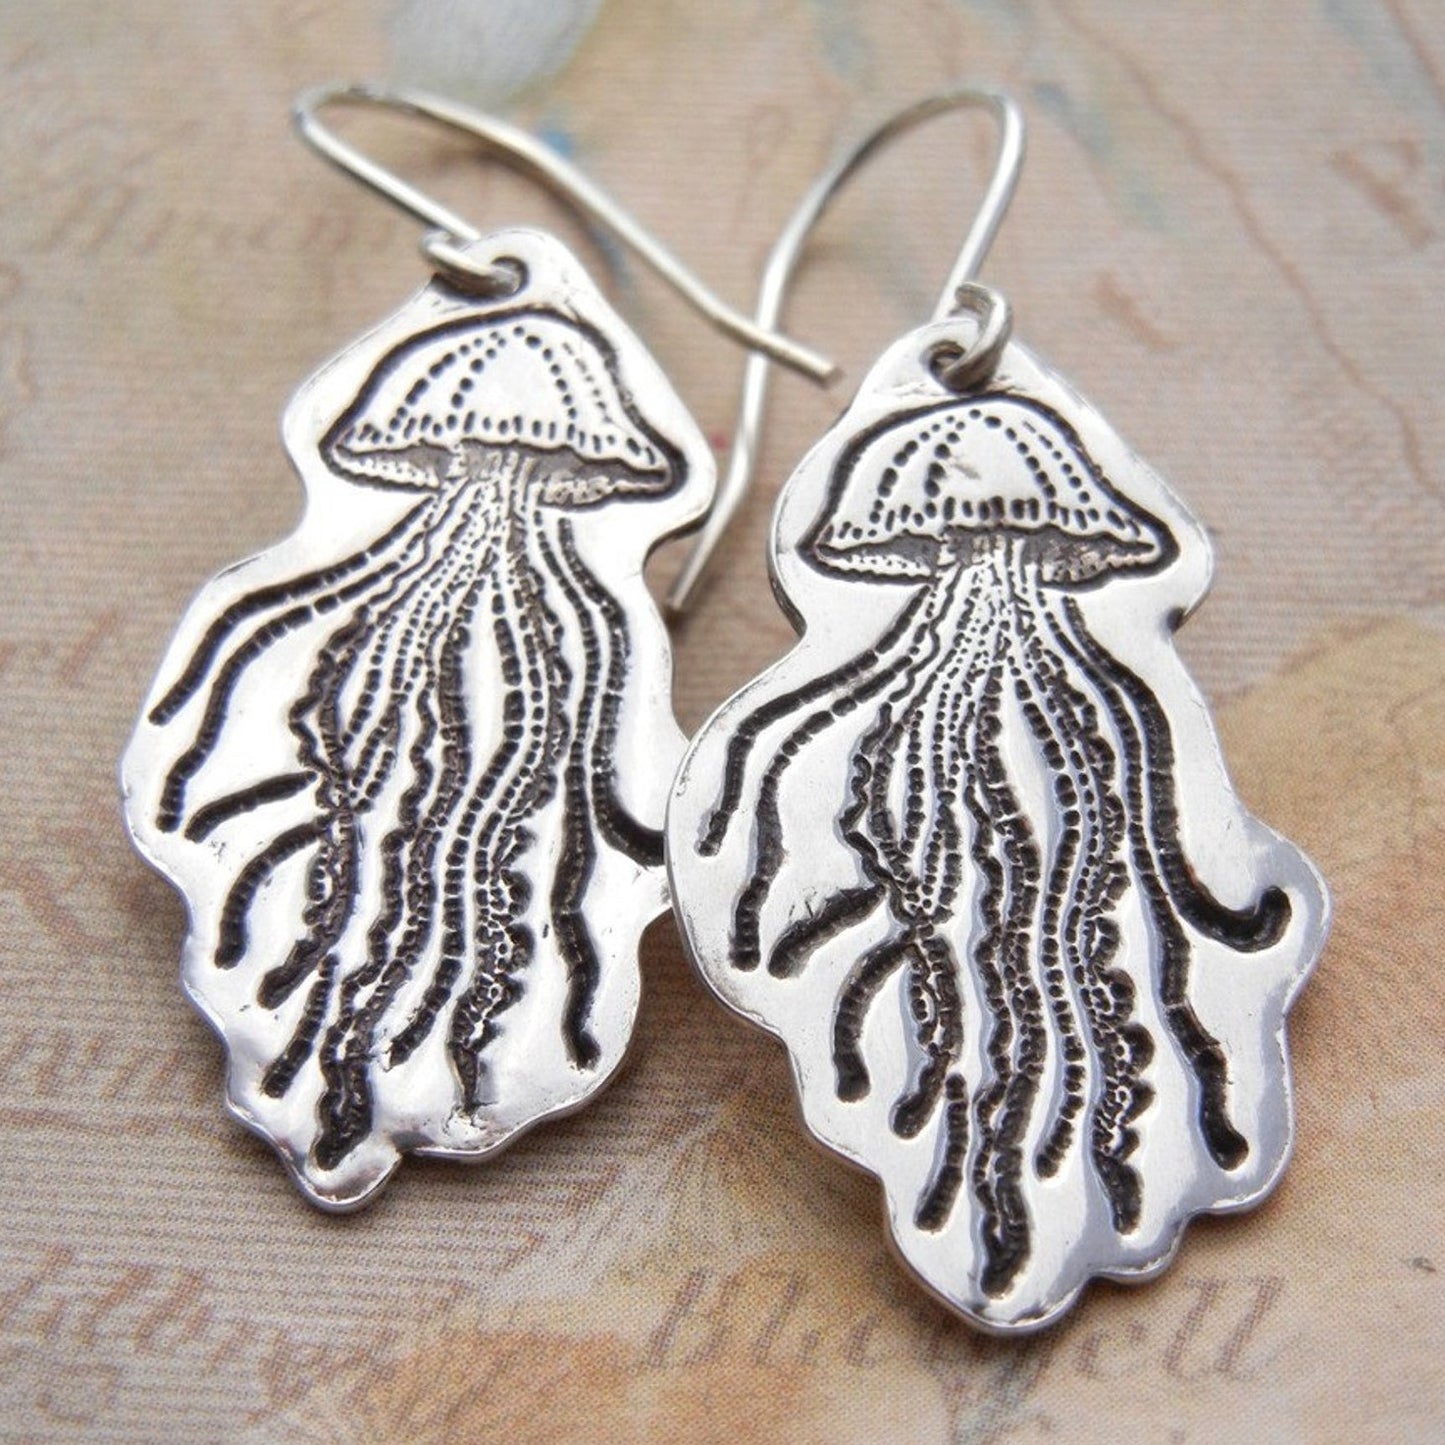 JellyFish Earrings Sterling Silver Jewelry